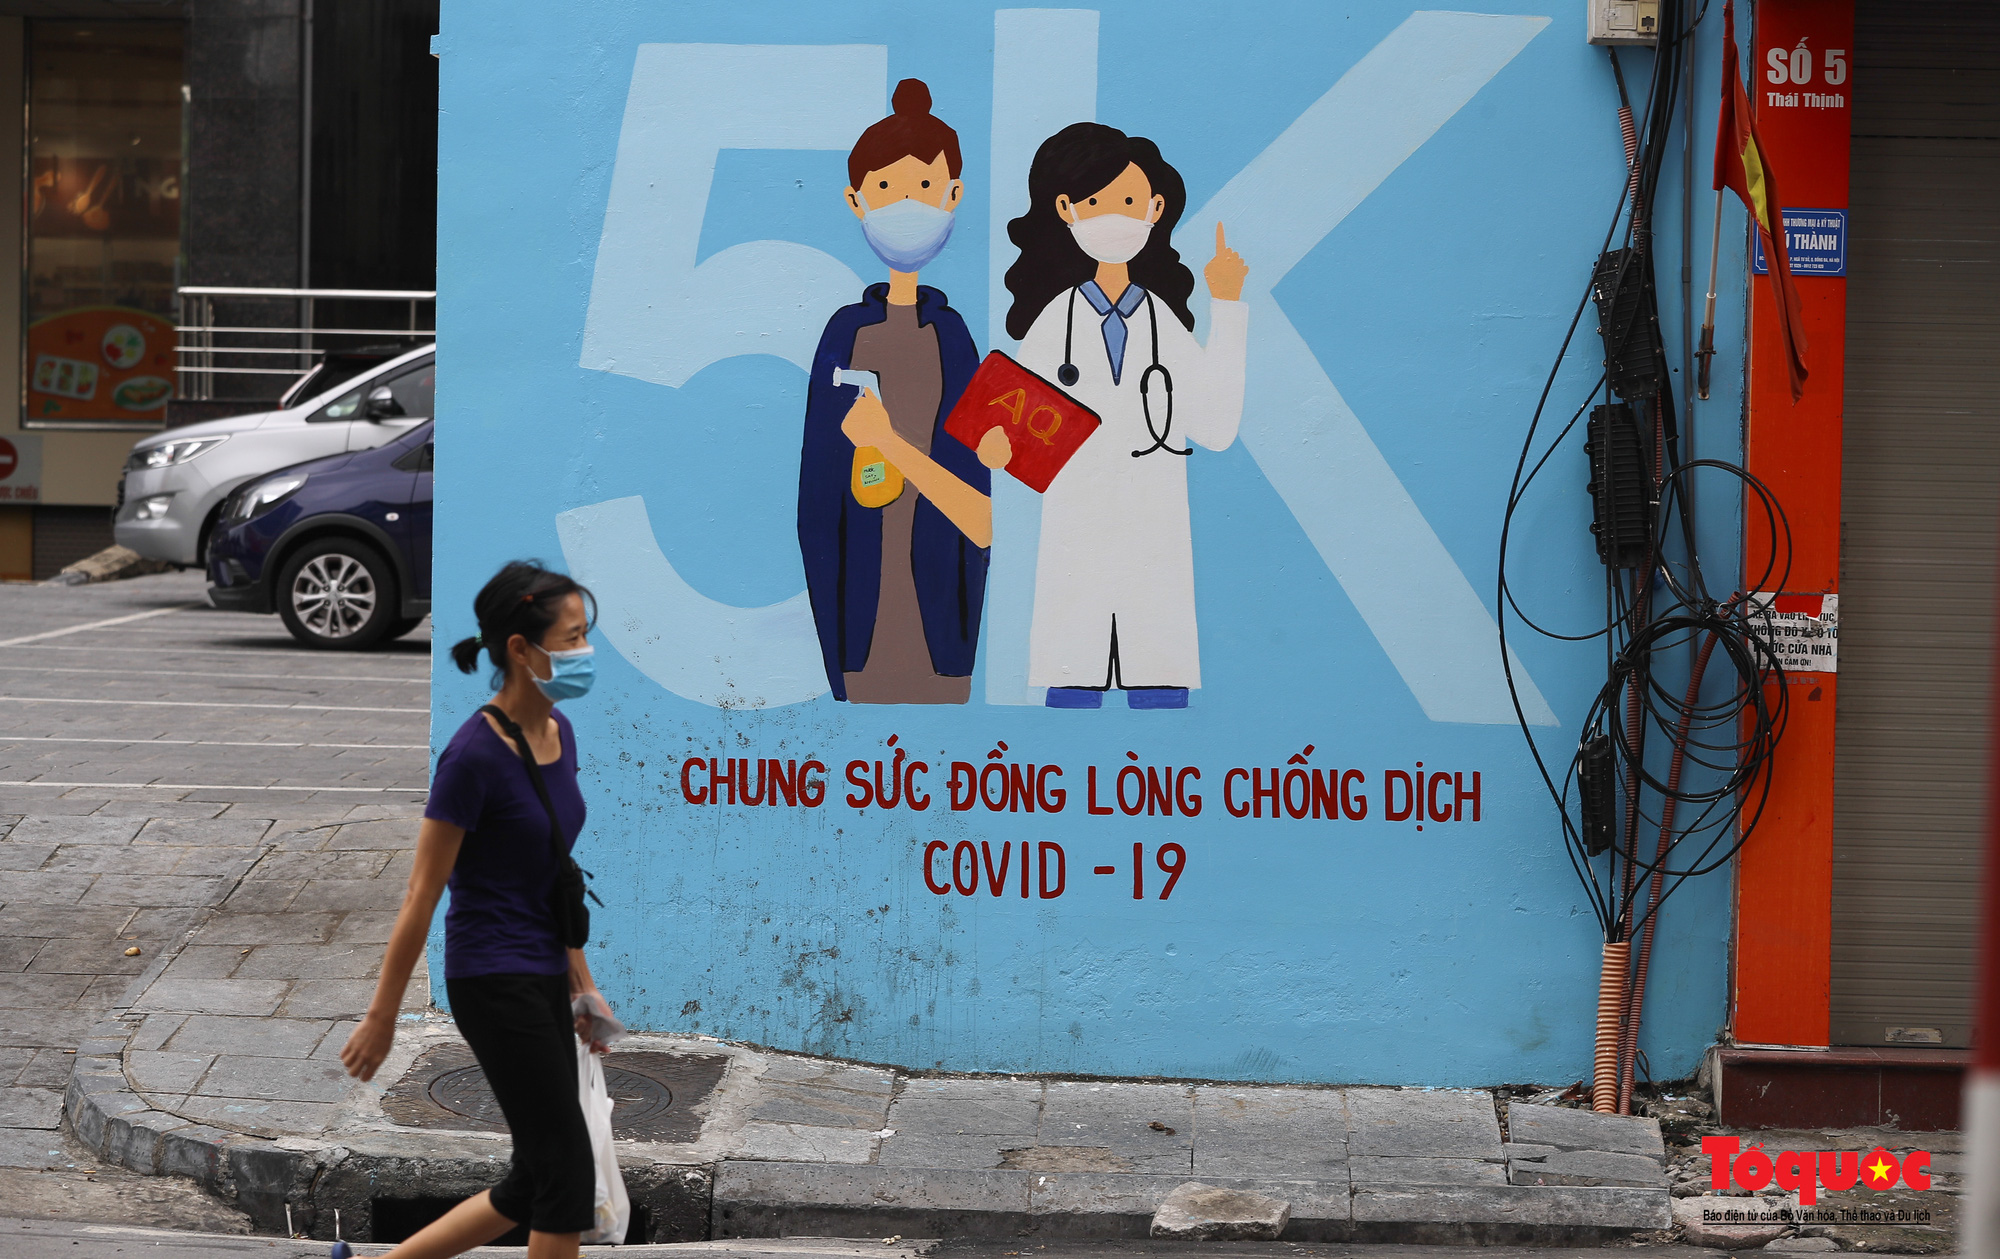 Pano, hình ảnh cổ động phòng chống dịch COVID-19 trên khắp đường phố Hà Nội - Ảnh 6.